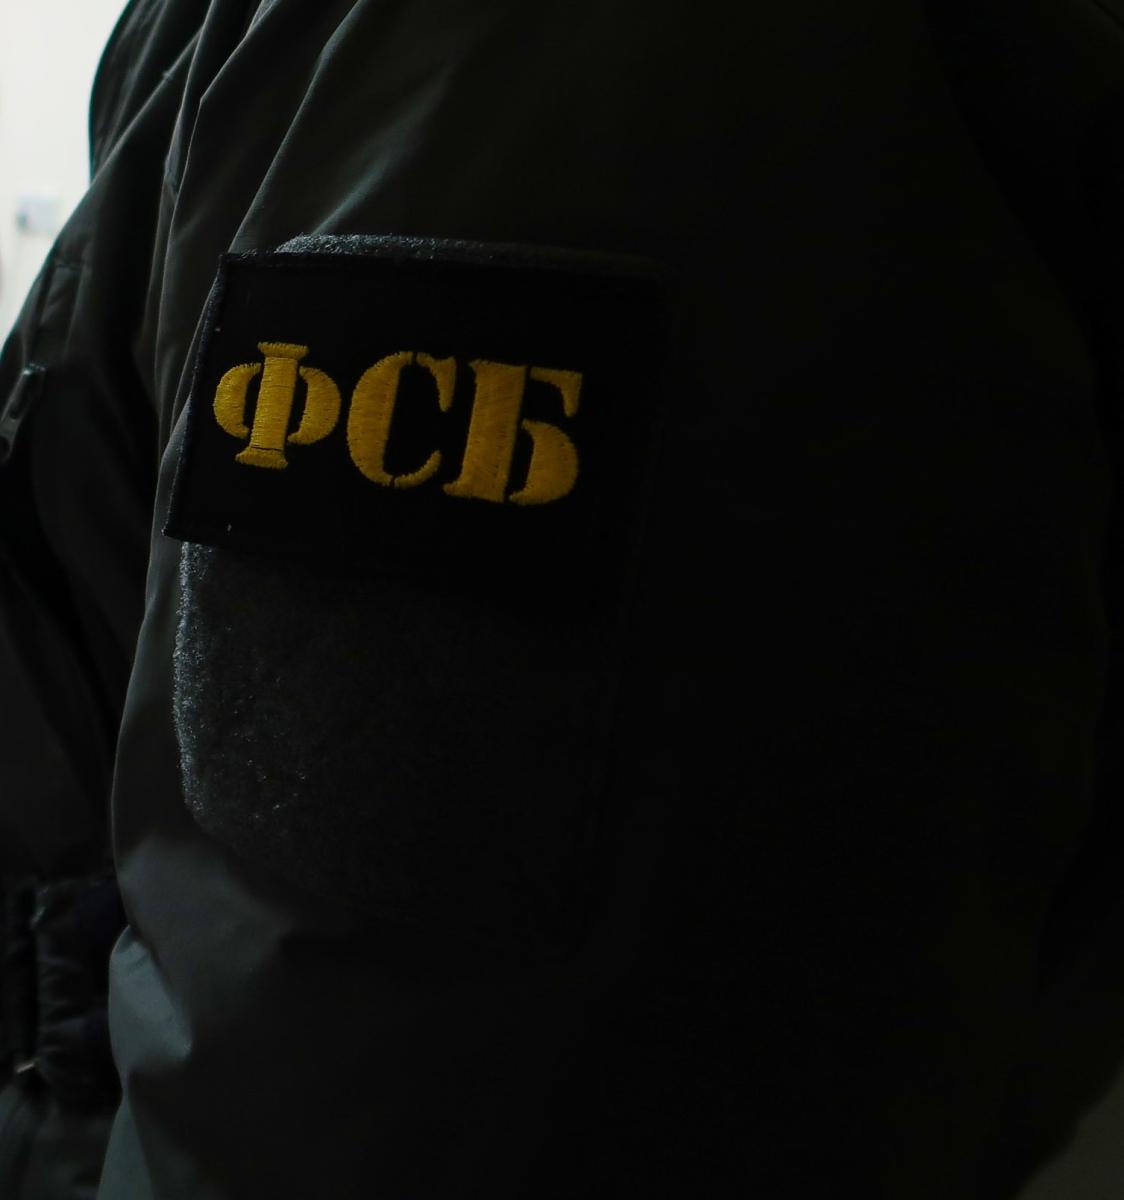 Брянский суд оштрафовал на 35 тысяч рублей гражданина за дискредитацию российской армии